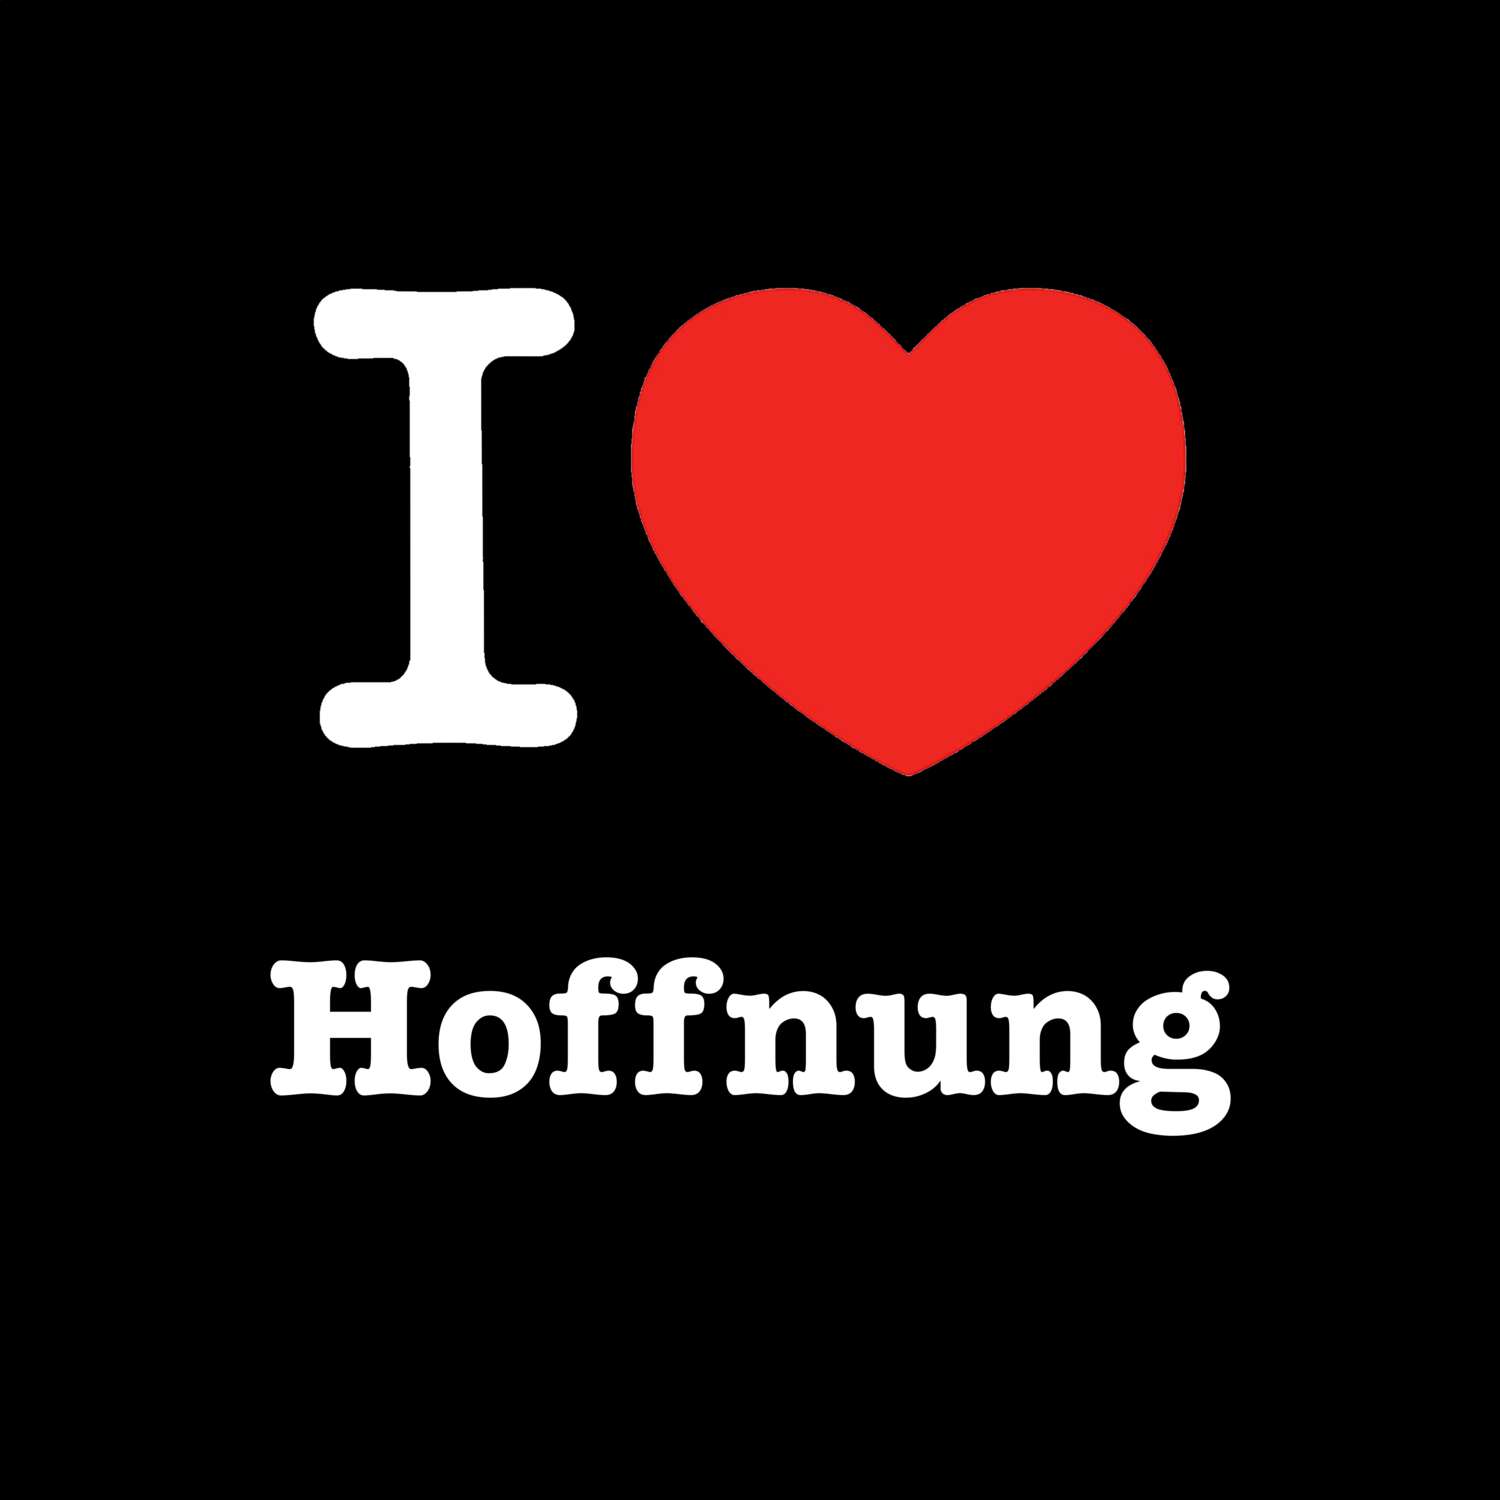 Hoffnung T-Shirt »I love«